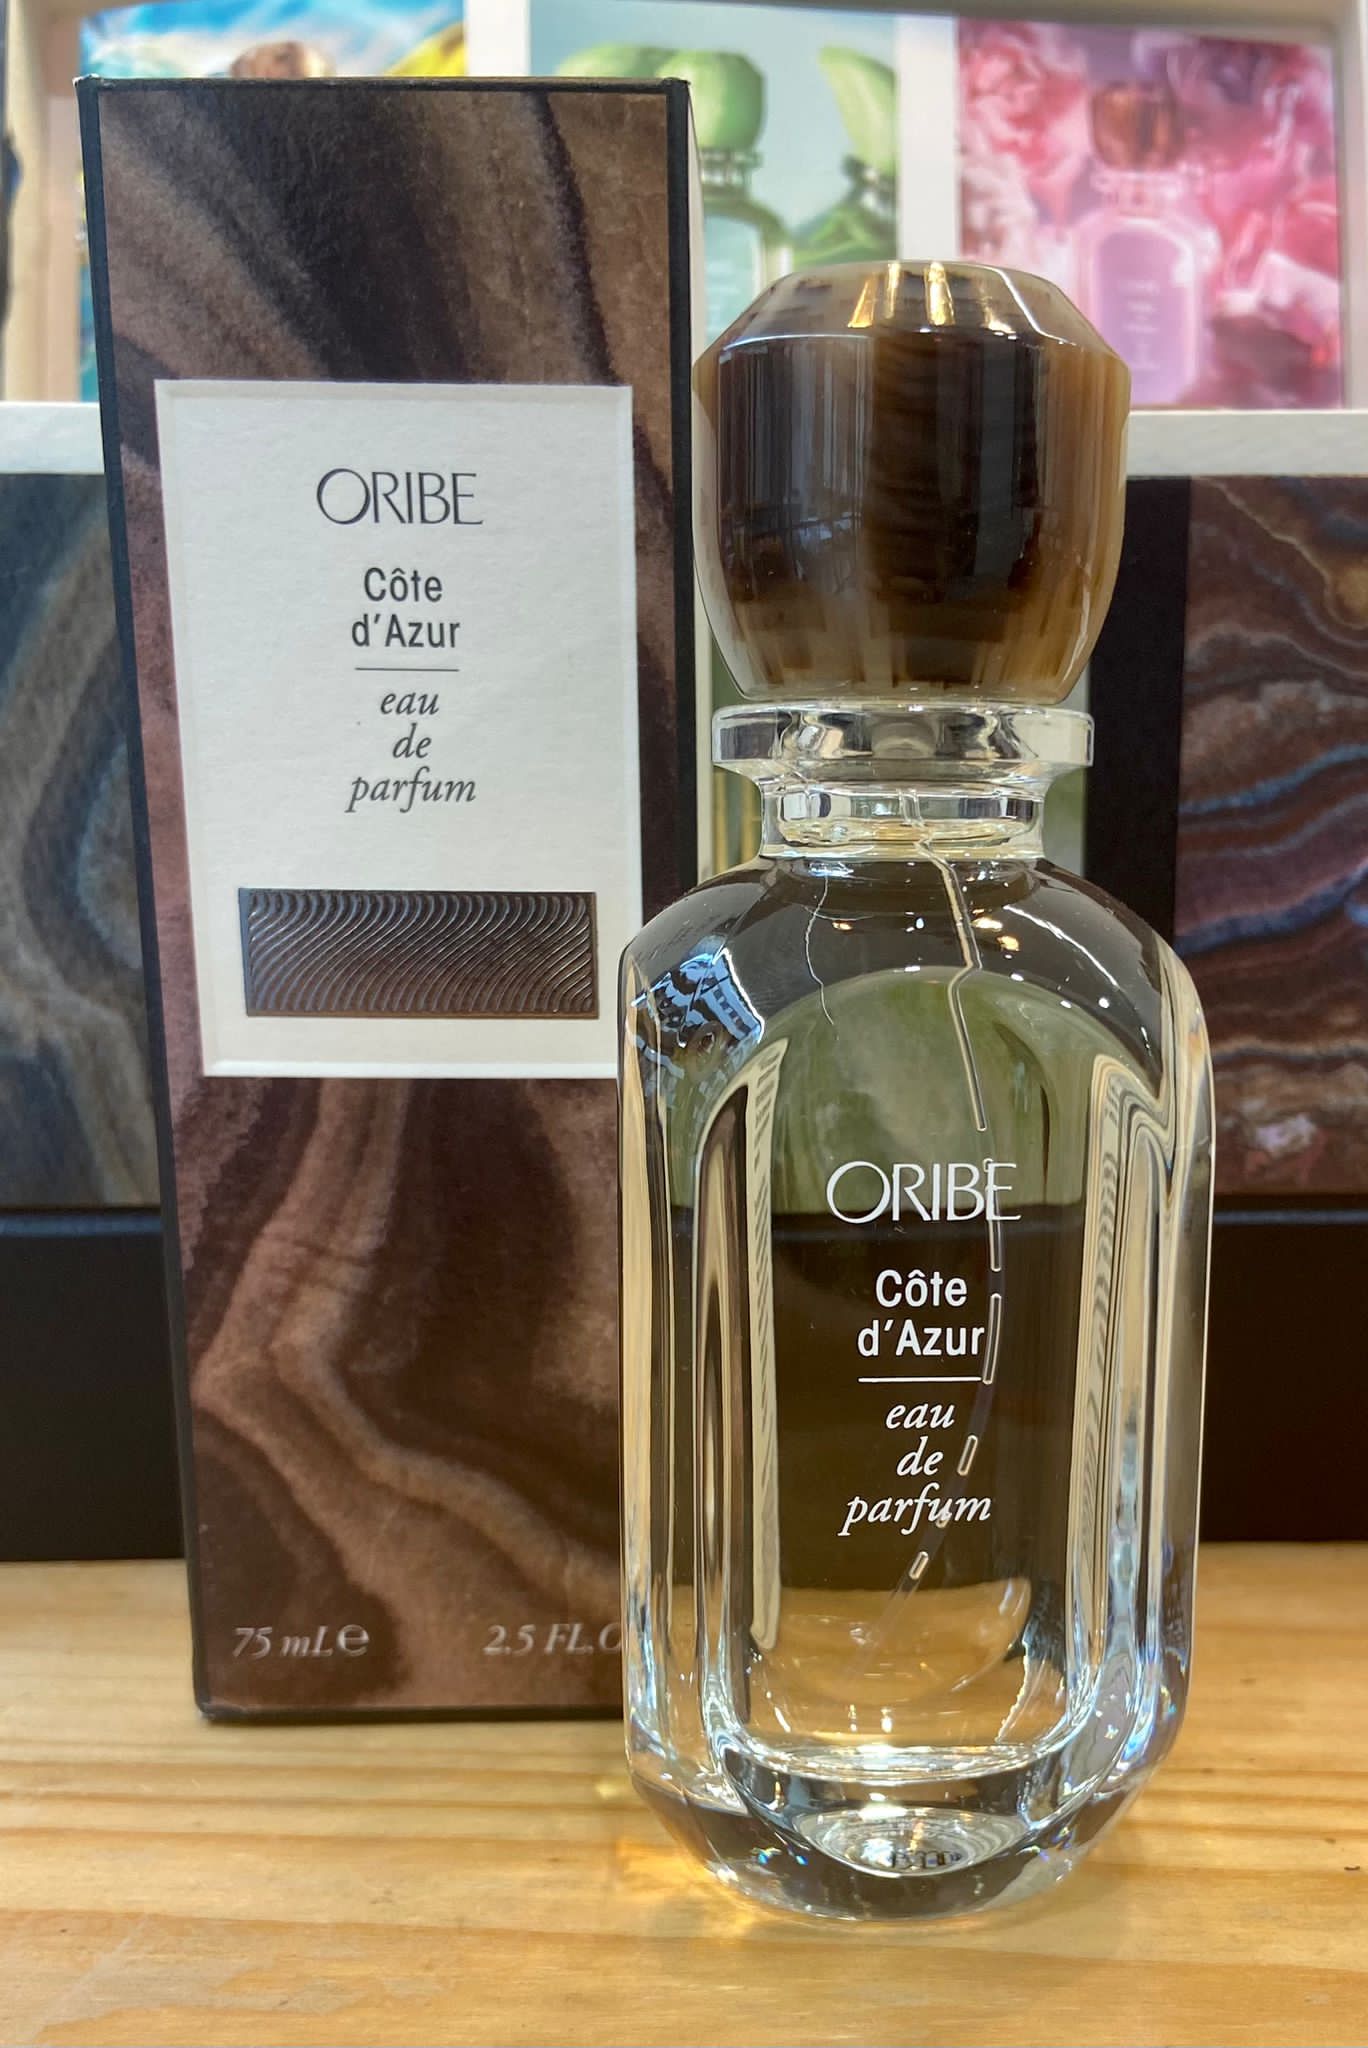 Oribe Cote D'azur eau de parfum 75 ml